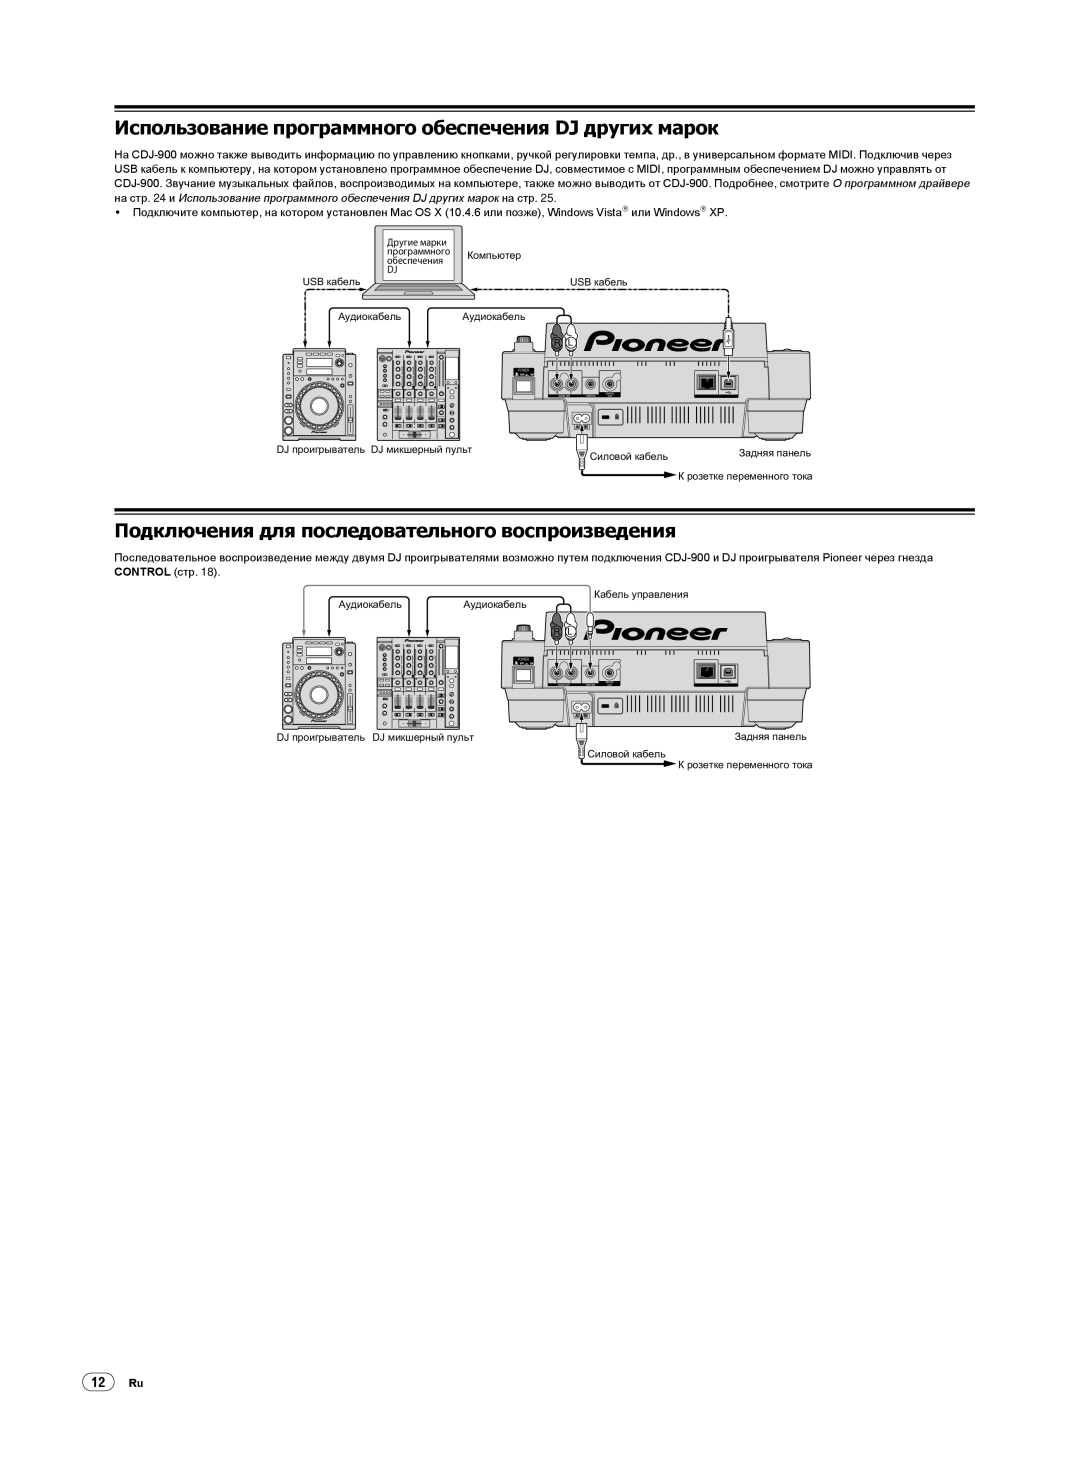 Pioneer CDJ-900, Multi Player operating instructions Подключения для последовательного воспроизведения, 12Ru 